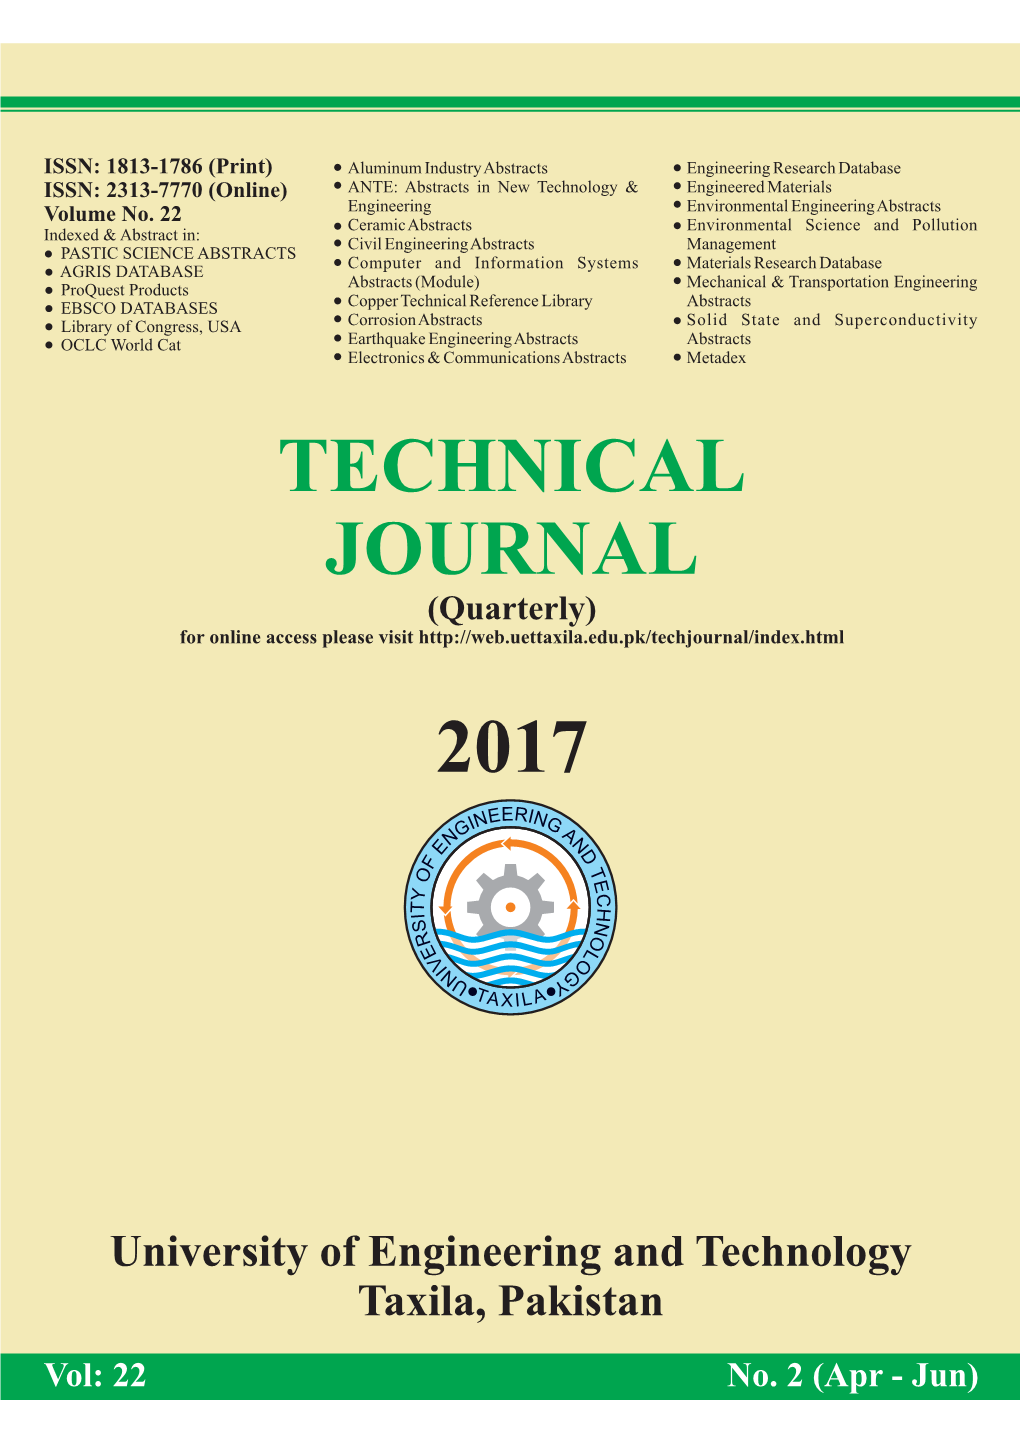 Technical Journal Vol 2